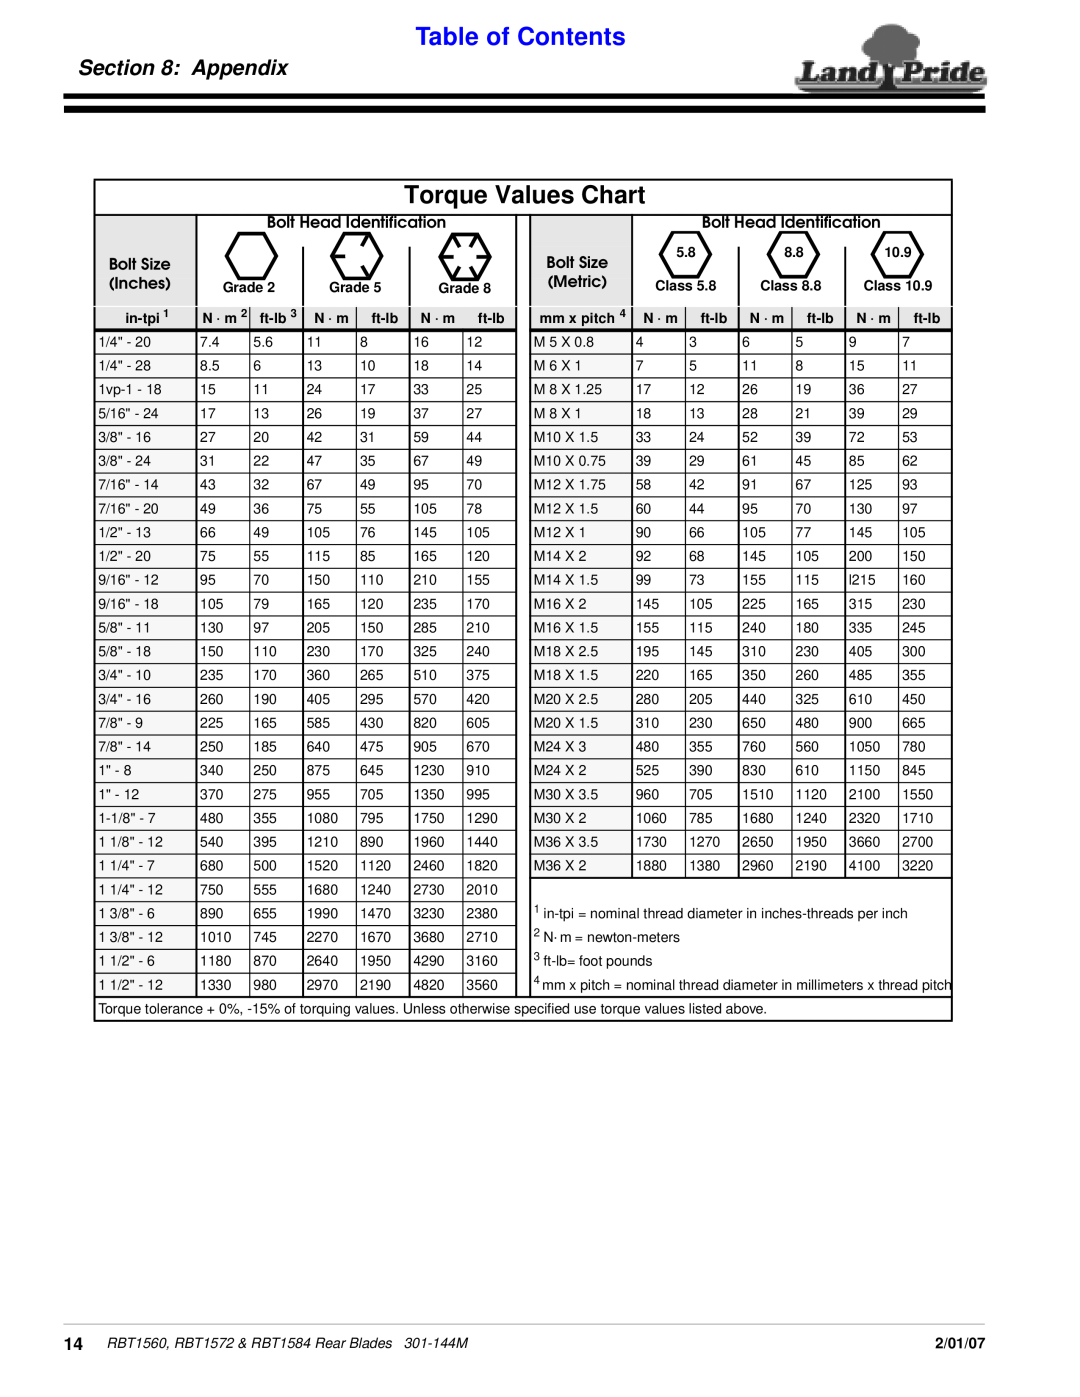 Land Pride RBT1560, Rear Blades, RBT1572 & RBT1584 manual Torque Values Chart, Appendix, Table of Contents, 2/01/07 